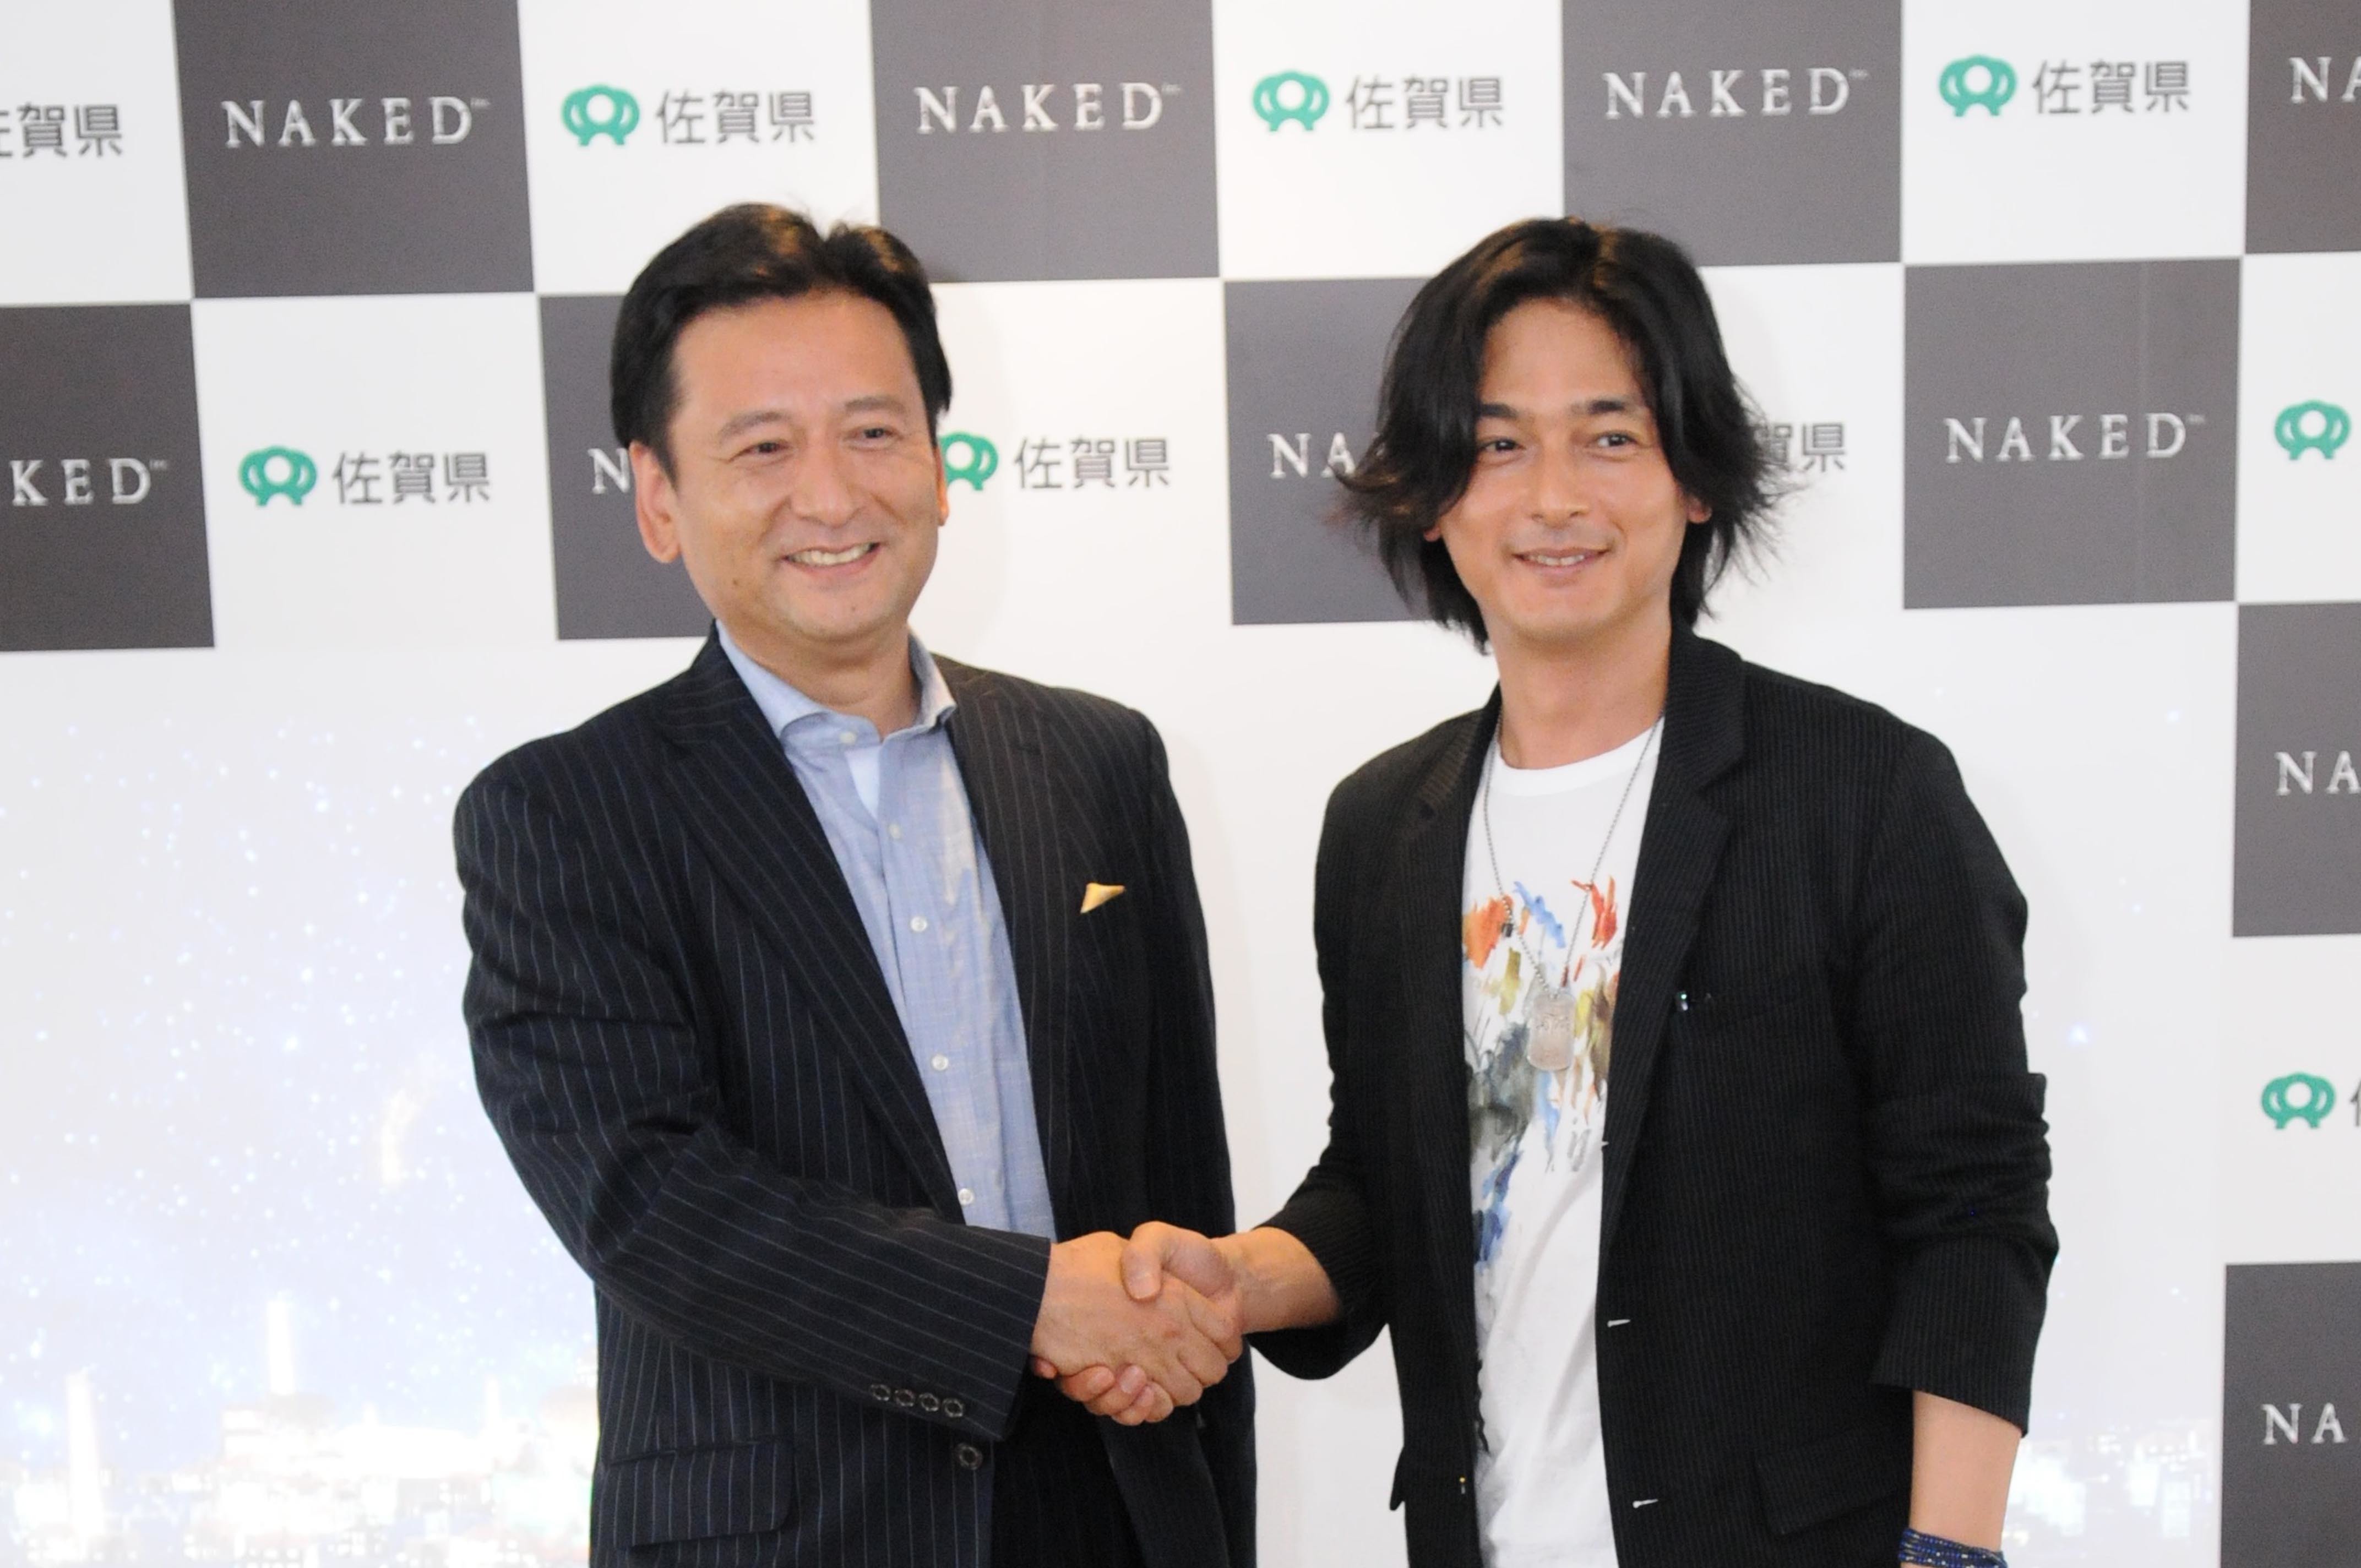 左から、佐賀県知事 ⼭口祥義⽒、株式会社NAKED代表 村松亮亮太郎